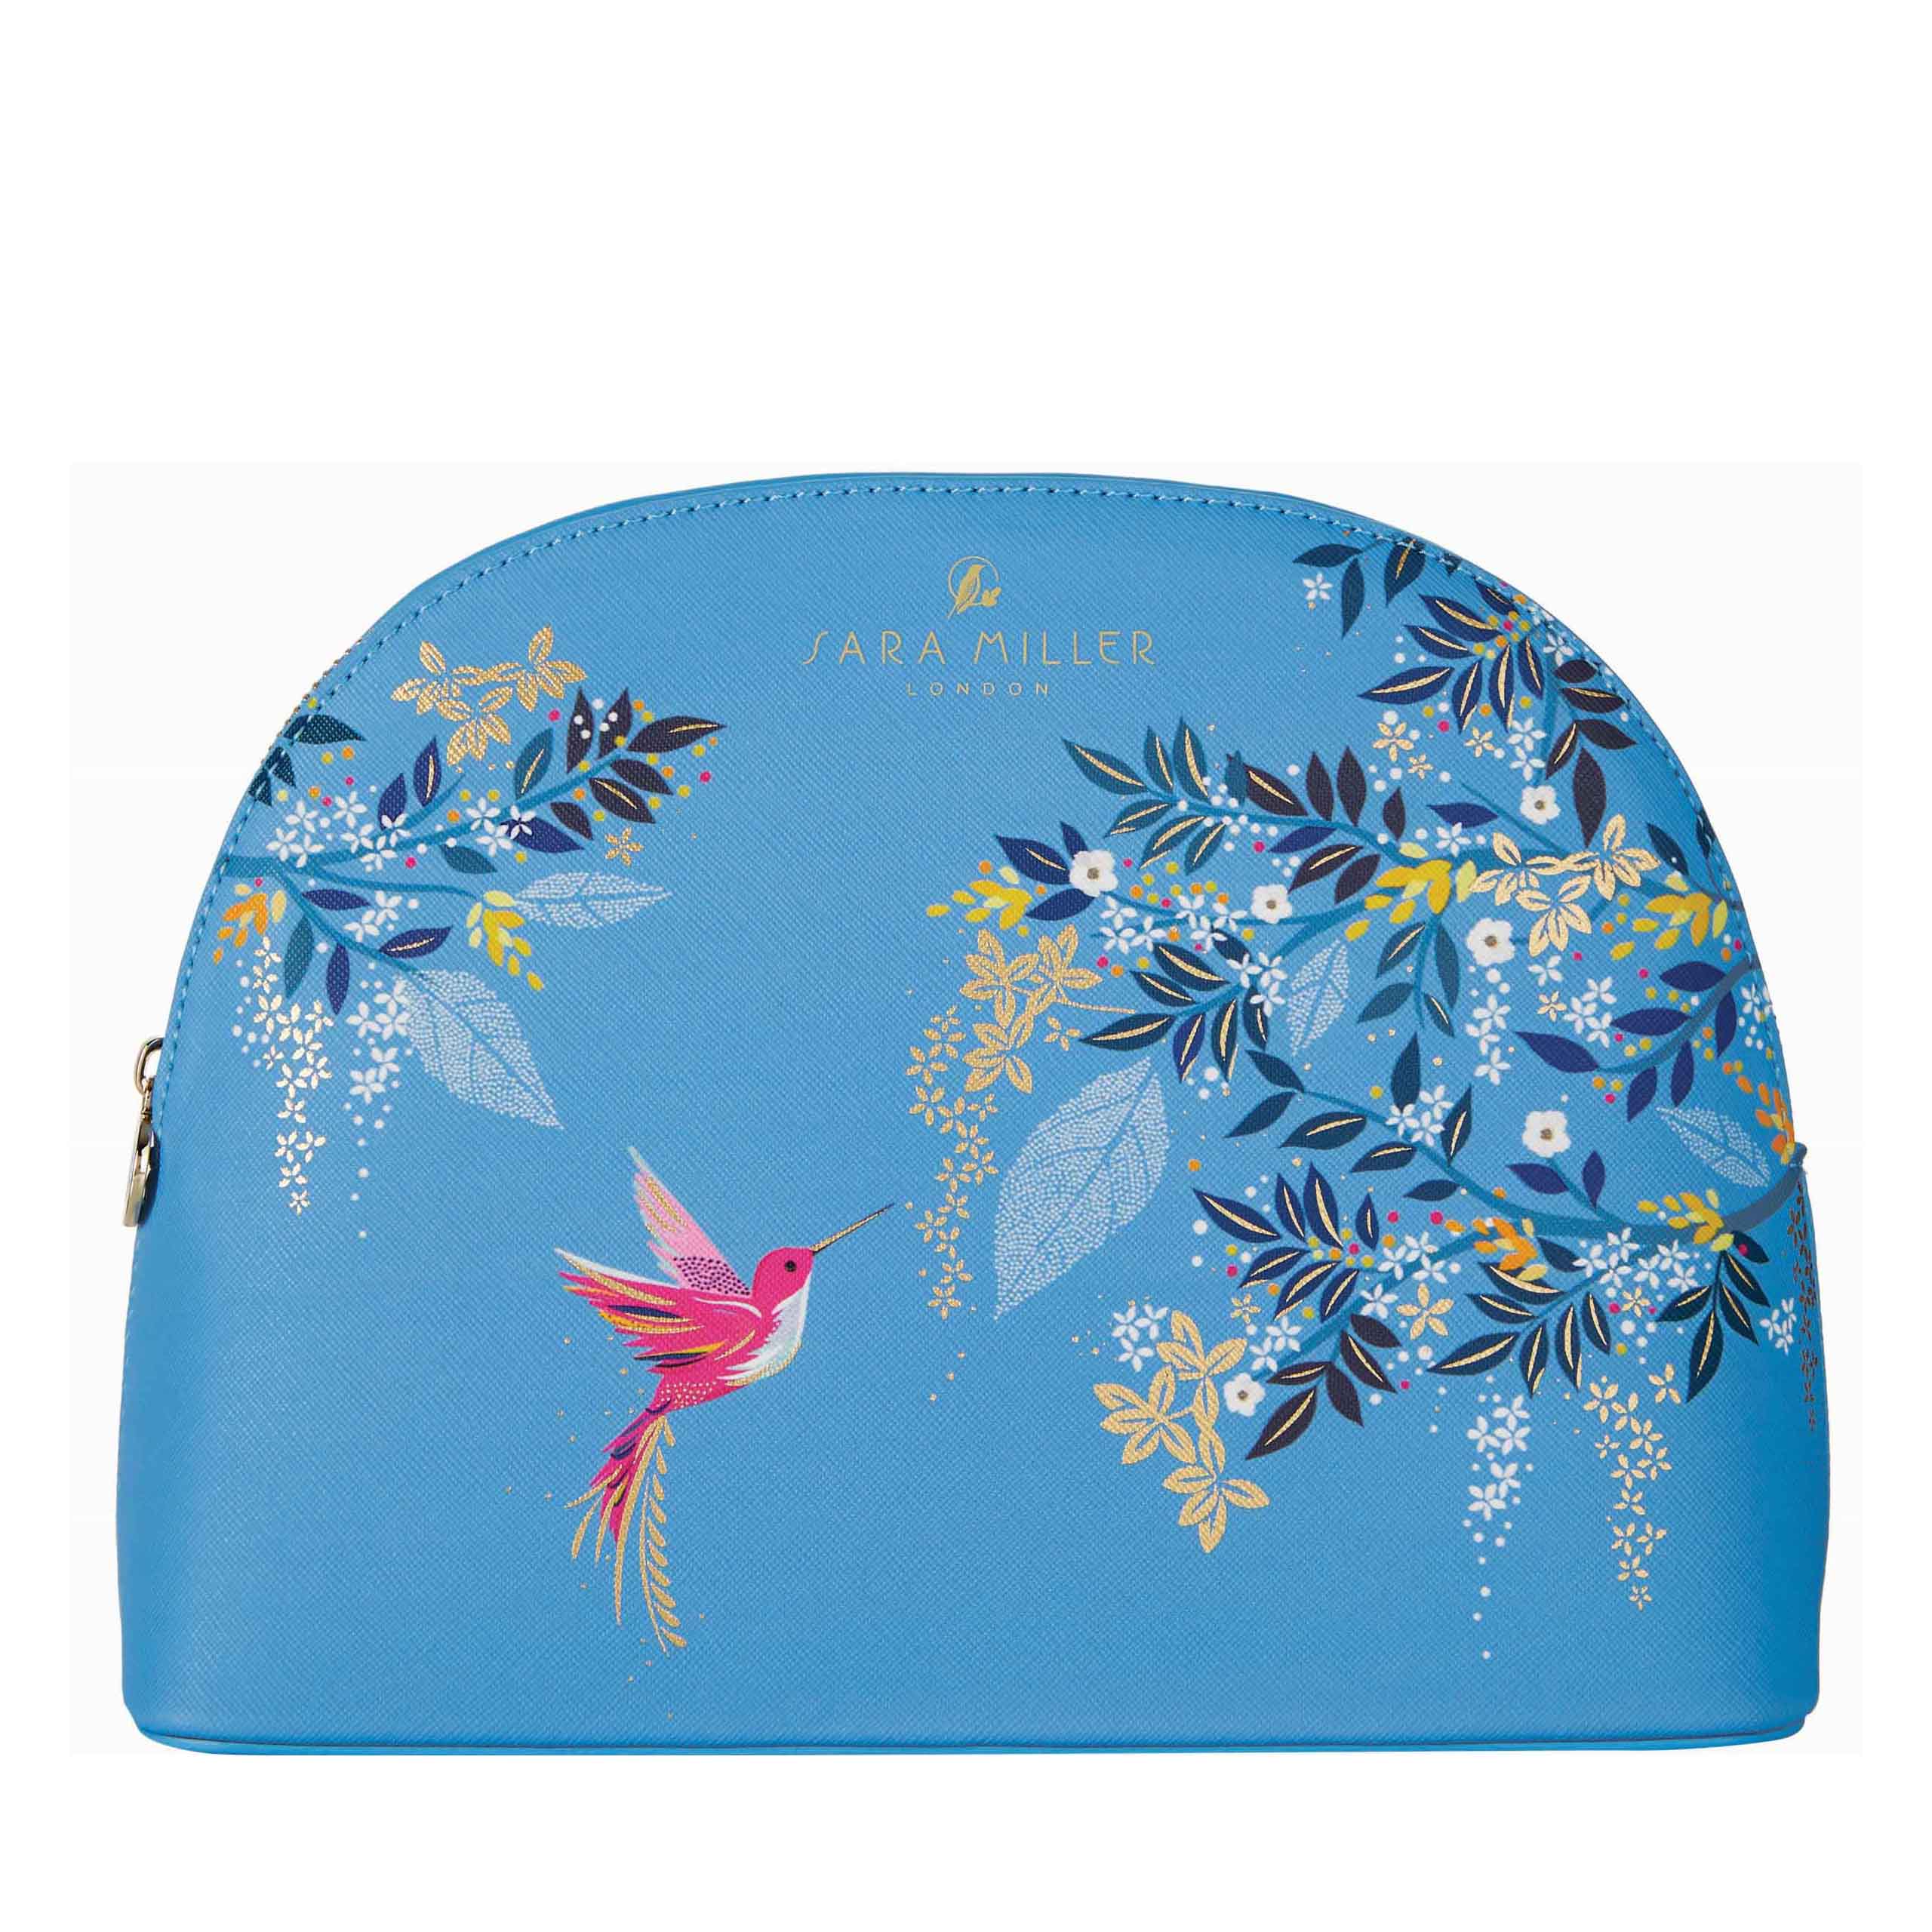 Sara Miller Large Blue Bird Cosmetic Bag